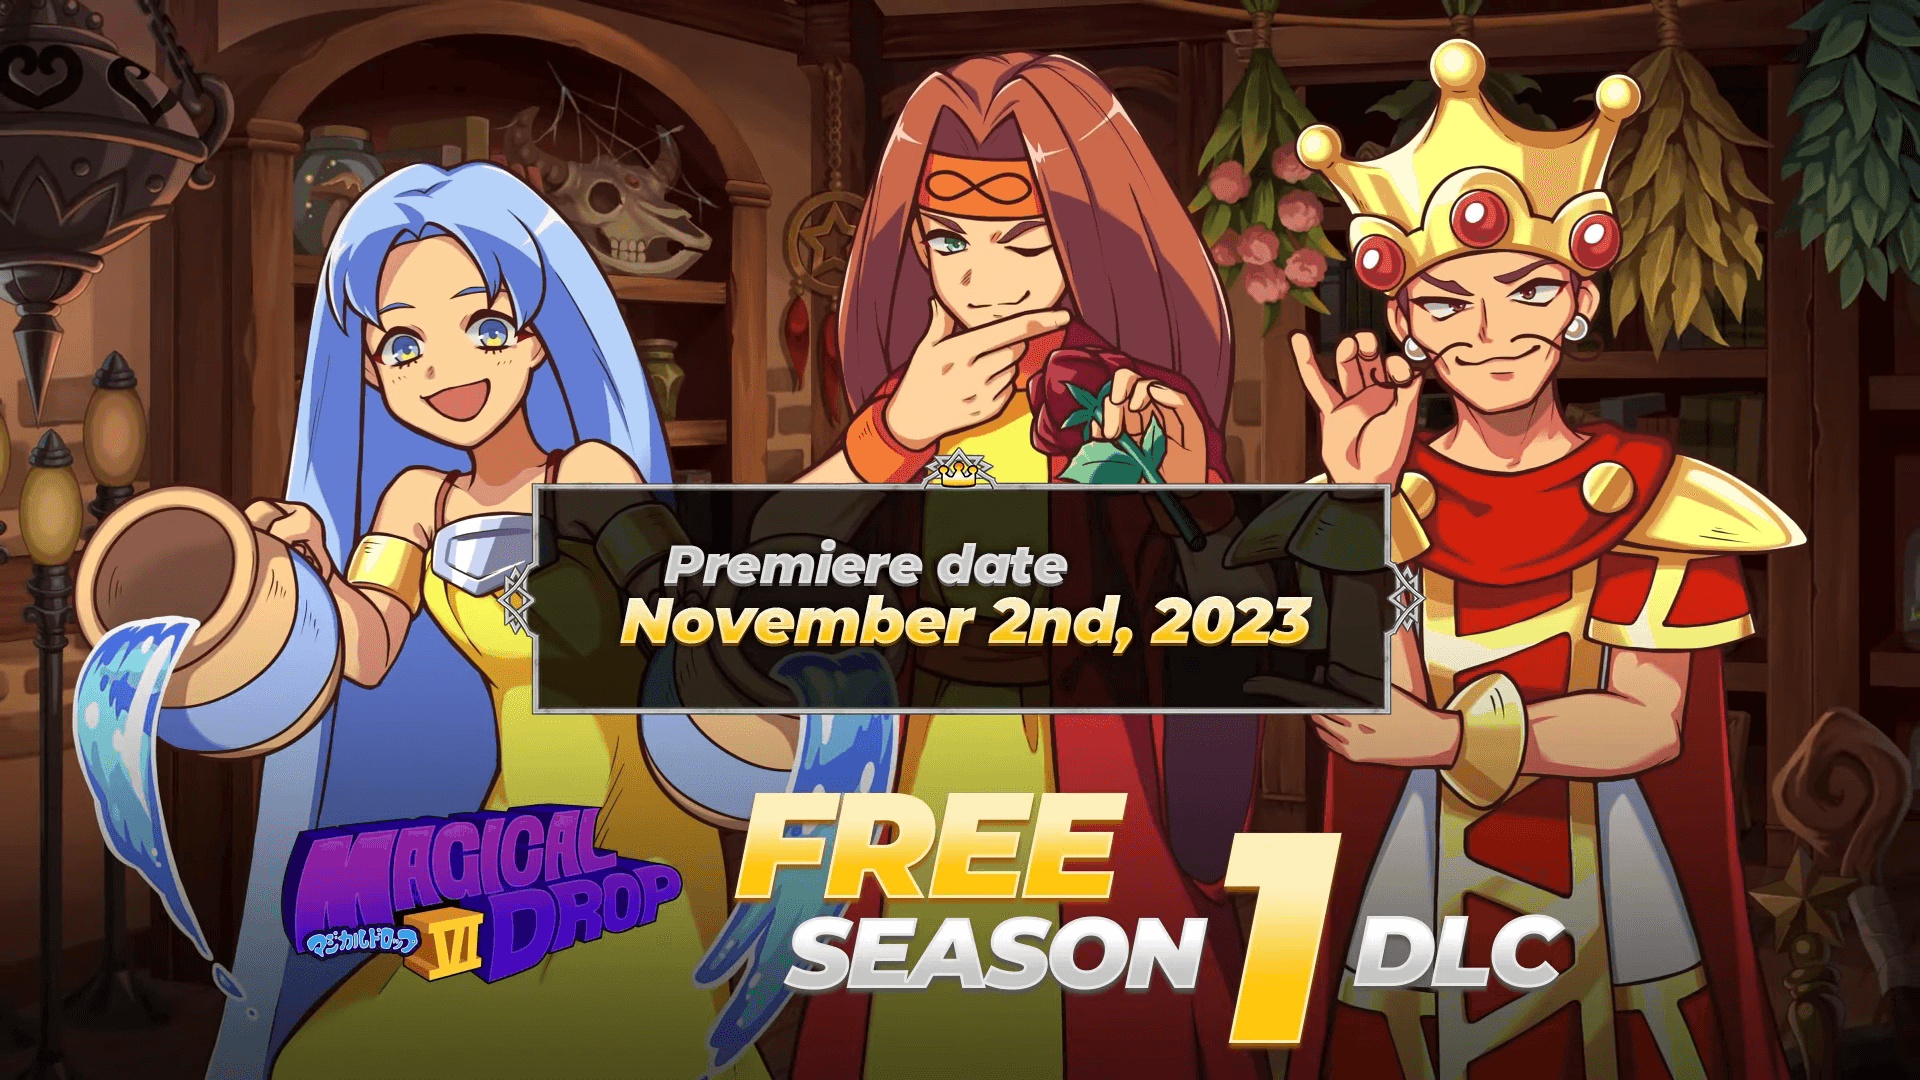 Magical Drop VI, dal 2 novembre il DLC gratuito “Season 1” 